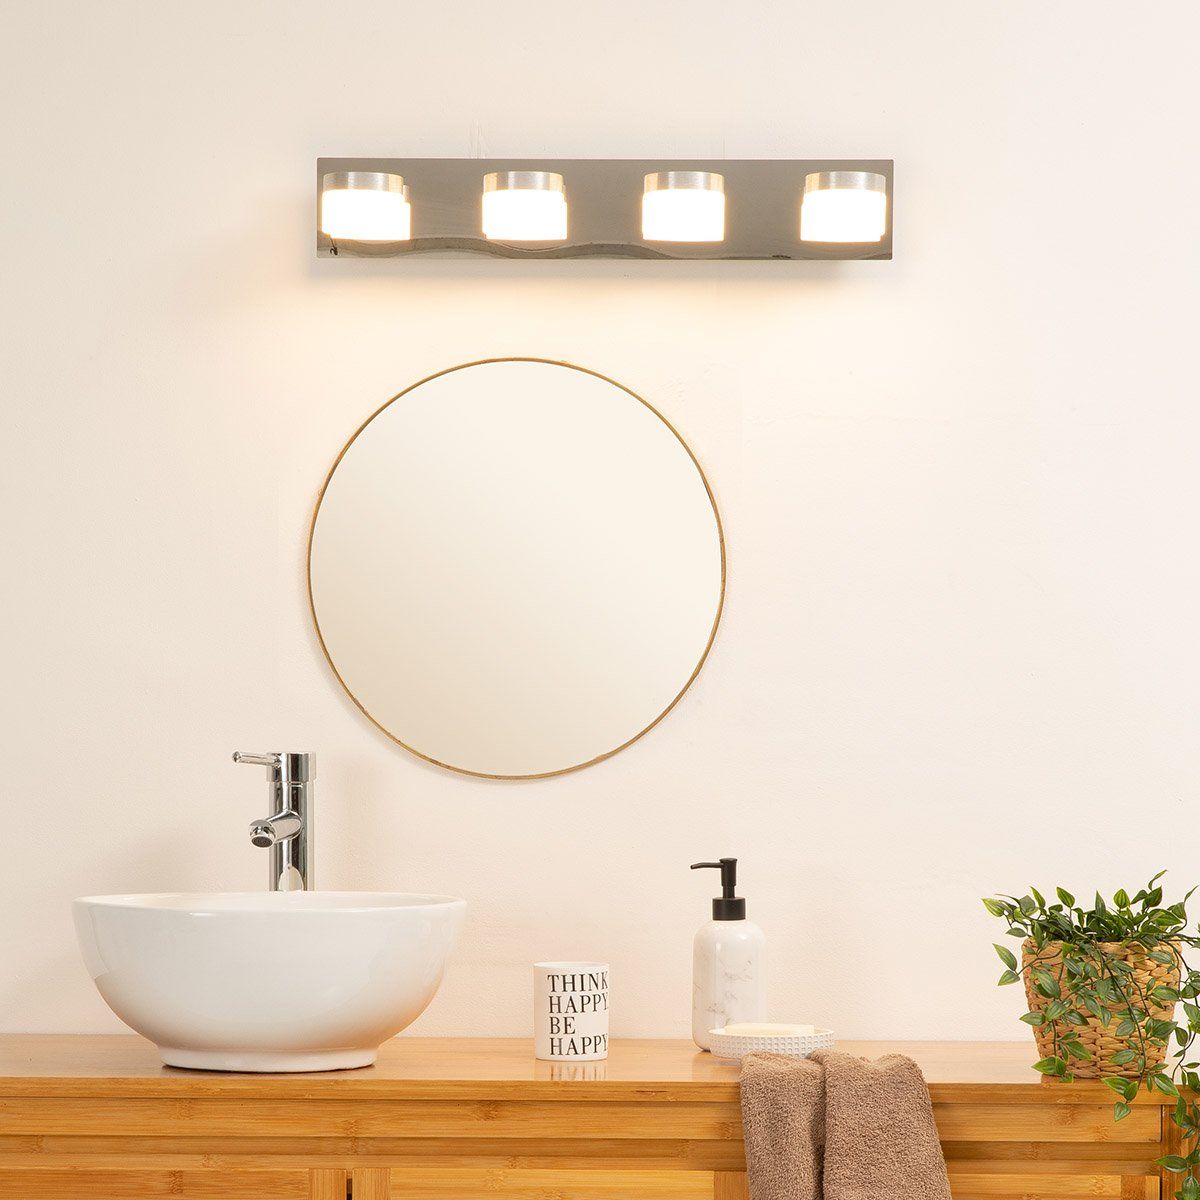 Réglette LED pour Miroire salle de bain et Armoire murale, Réglettes